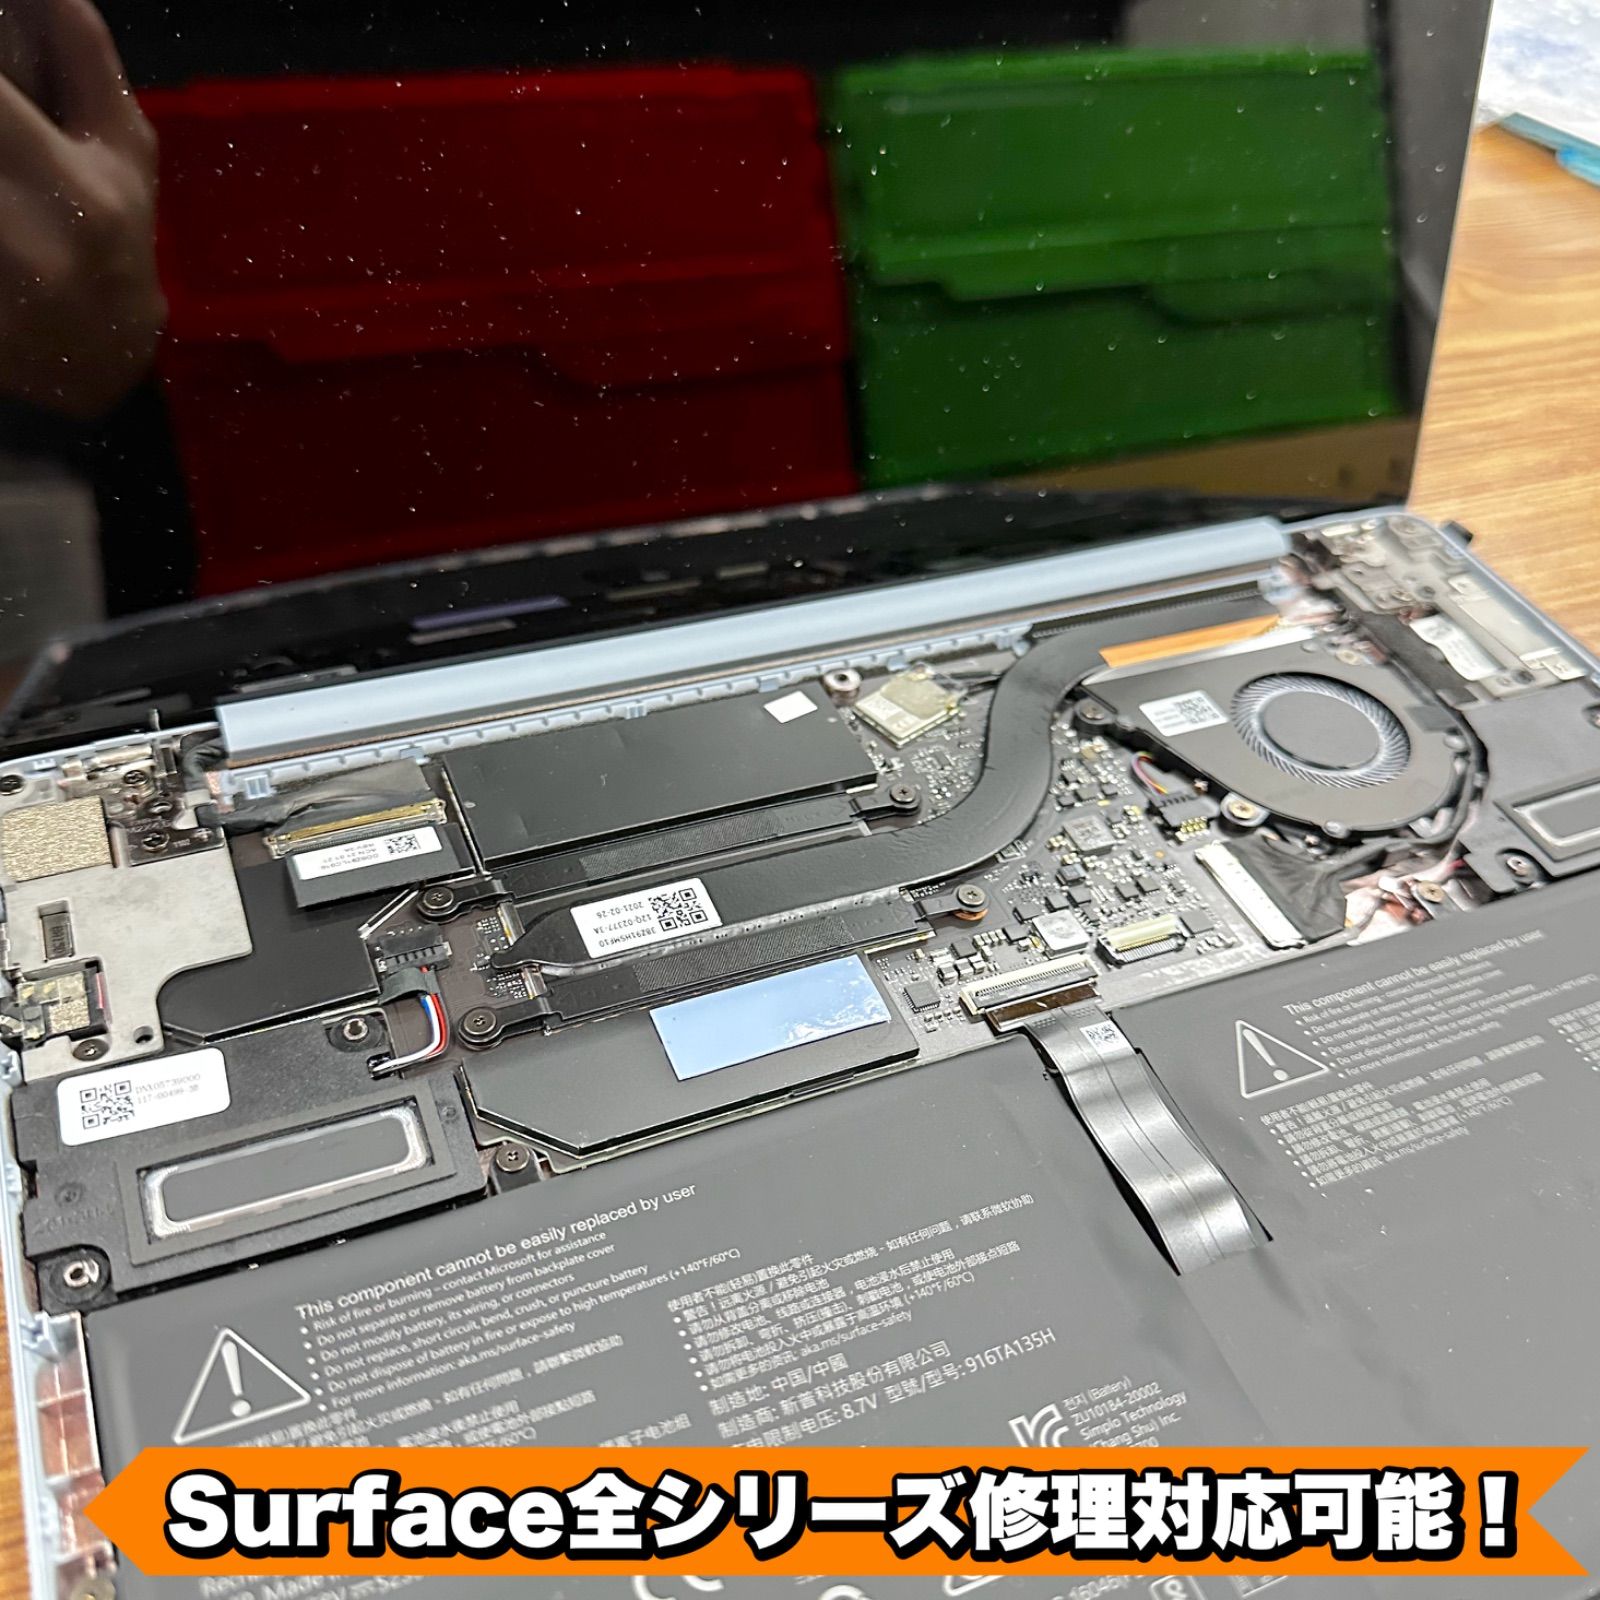 準未使用 Surface Laptop Go2 セージ i5 8 SSD 128 - メルカリ